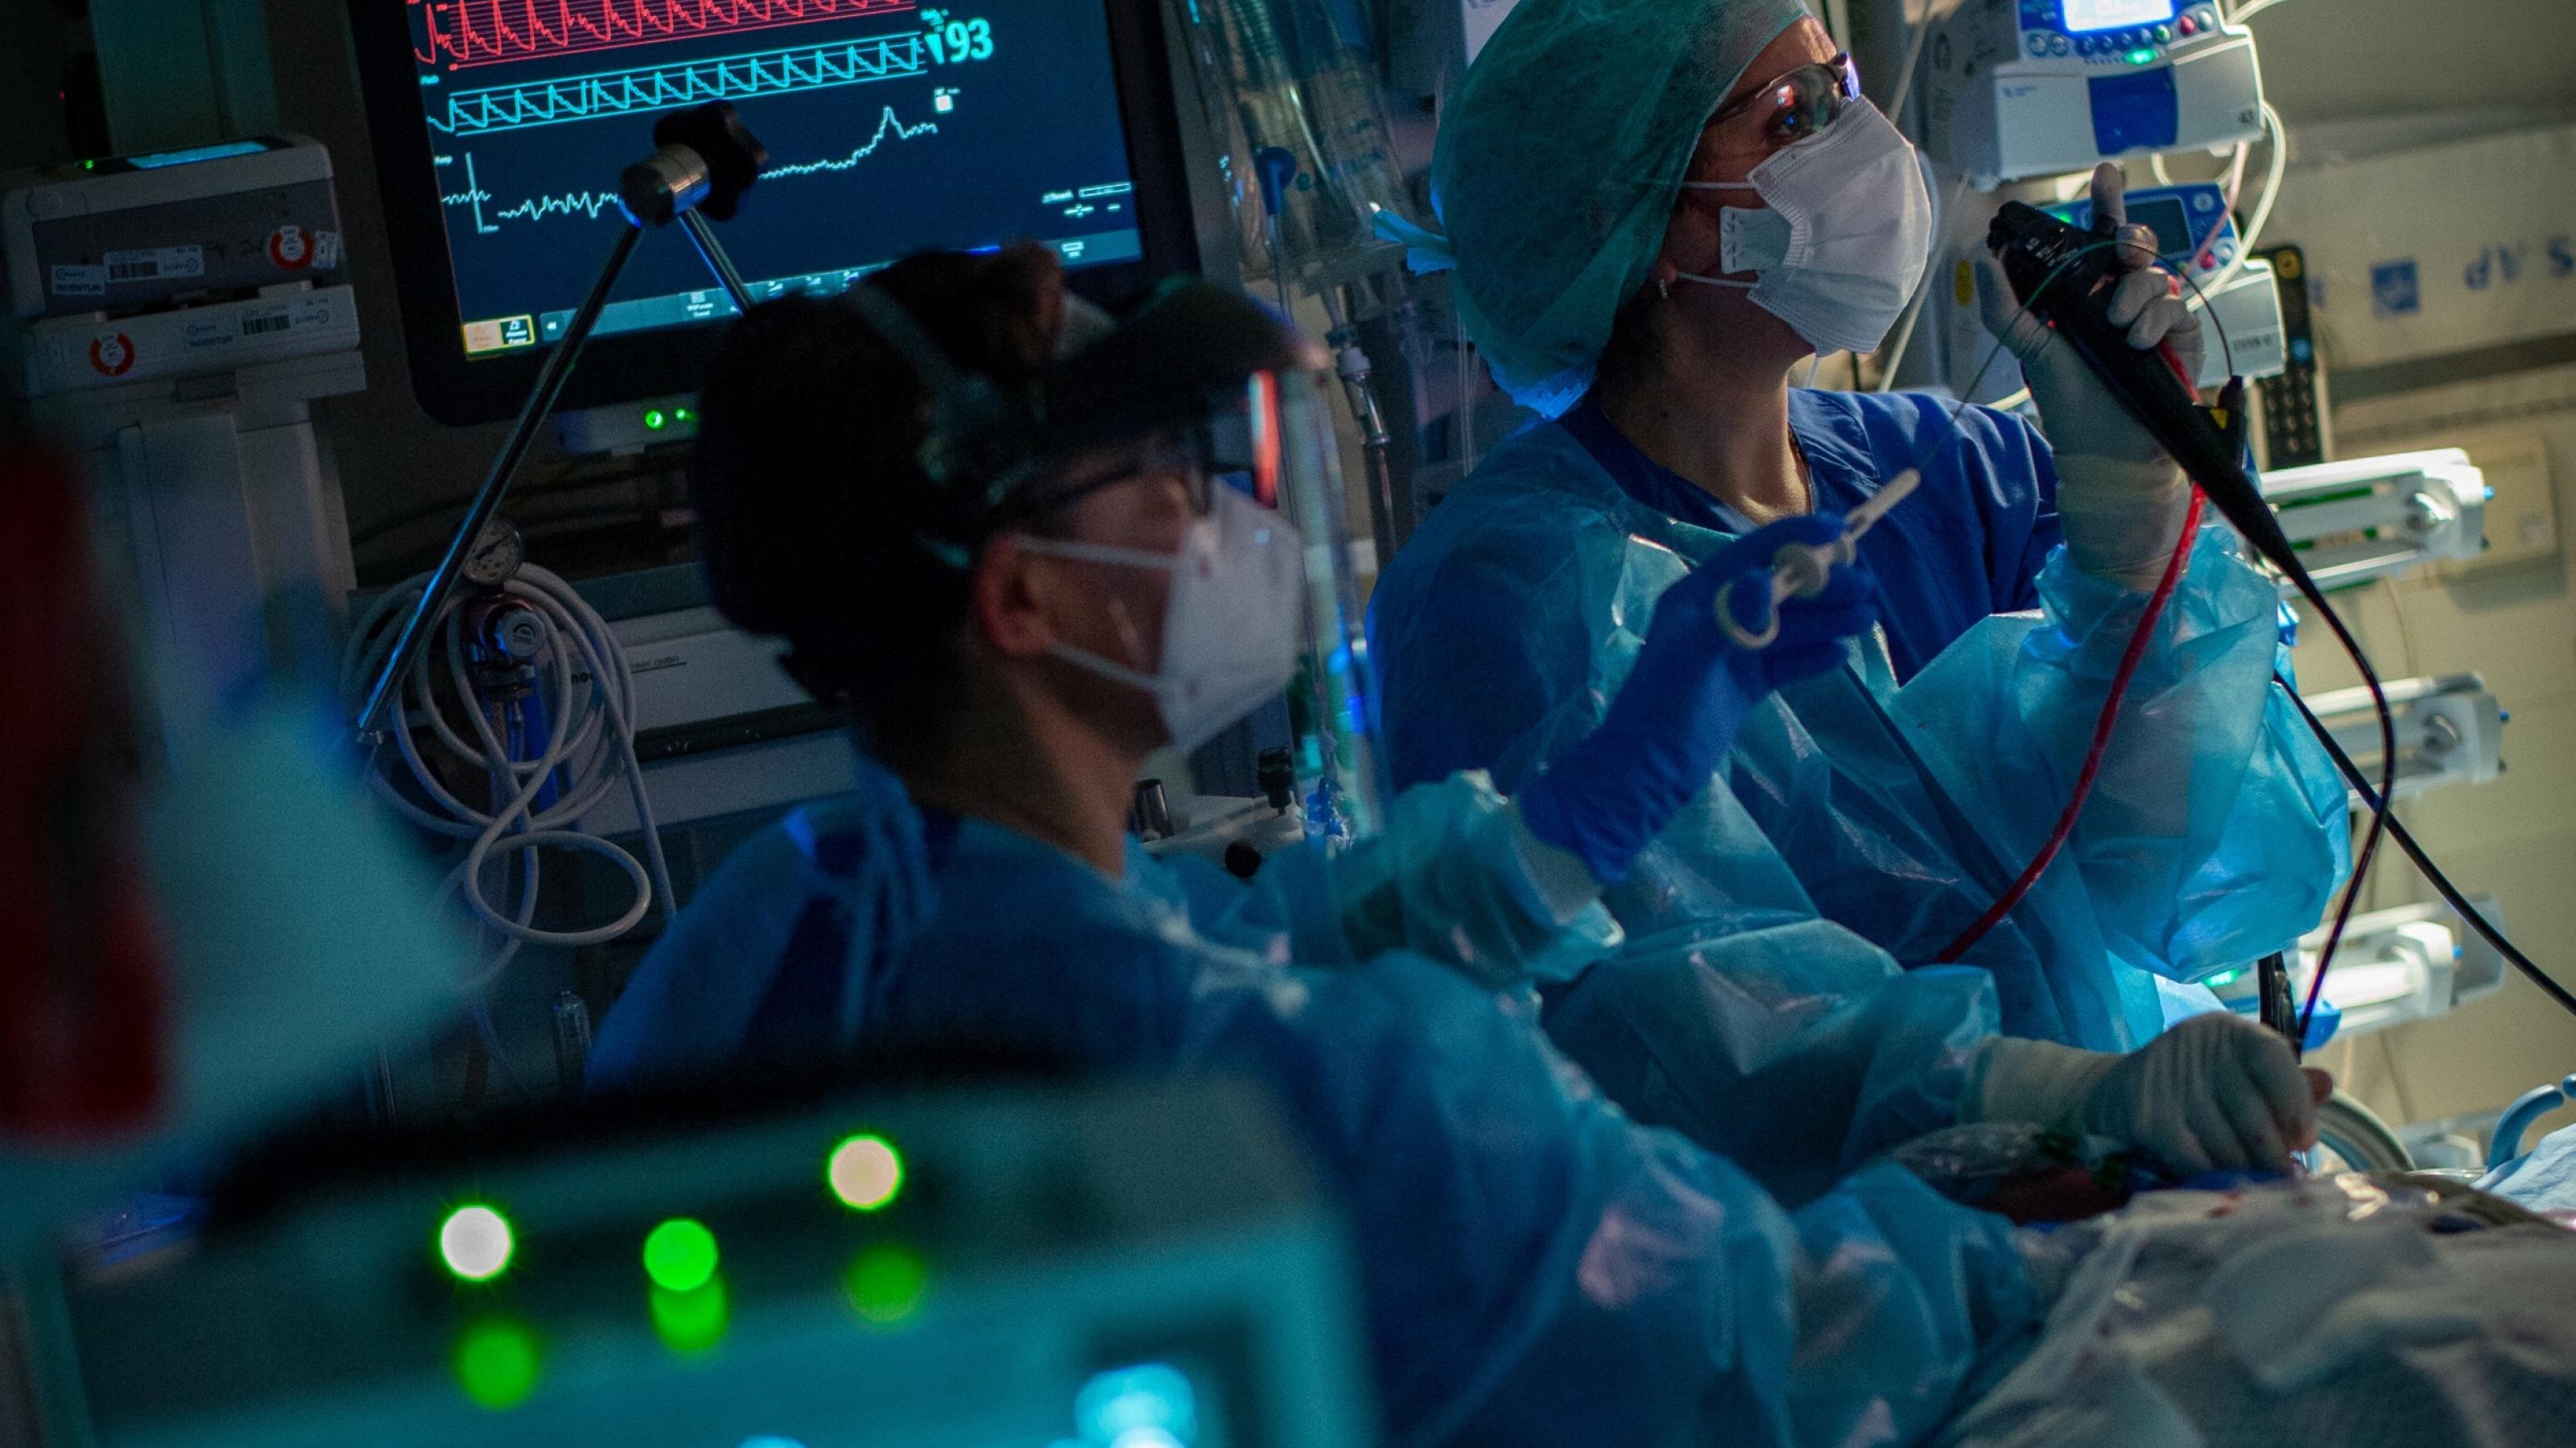 Intensivstation mit Bildschirmen. Zwei Mediziner in Schutzkleidung versorgen einen Covid-Patienten.